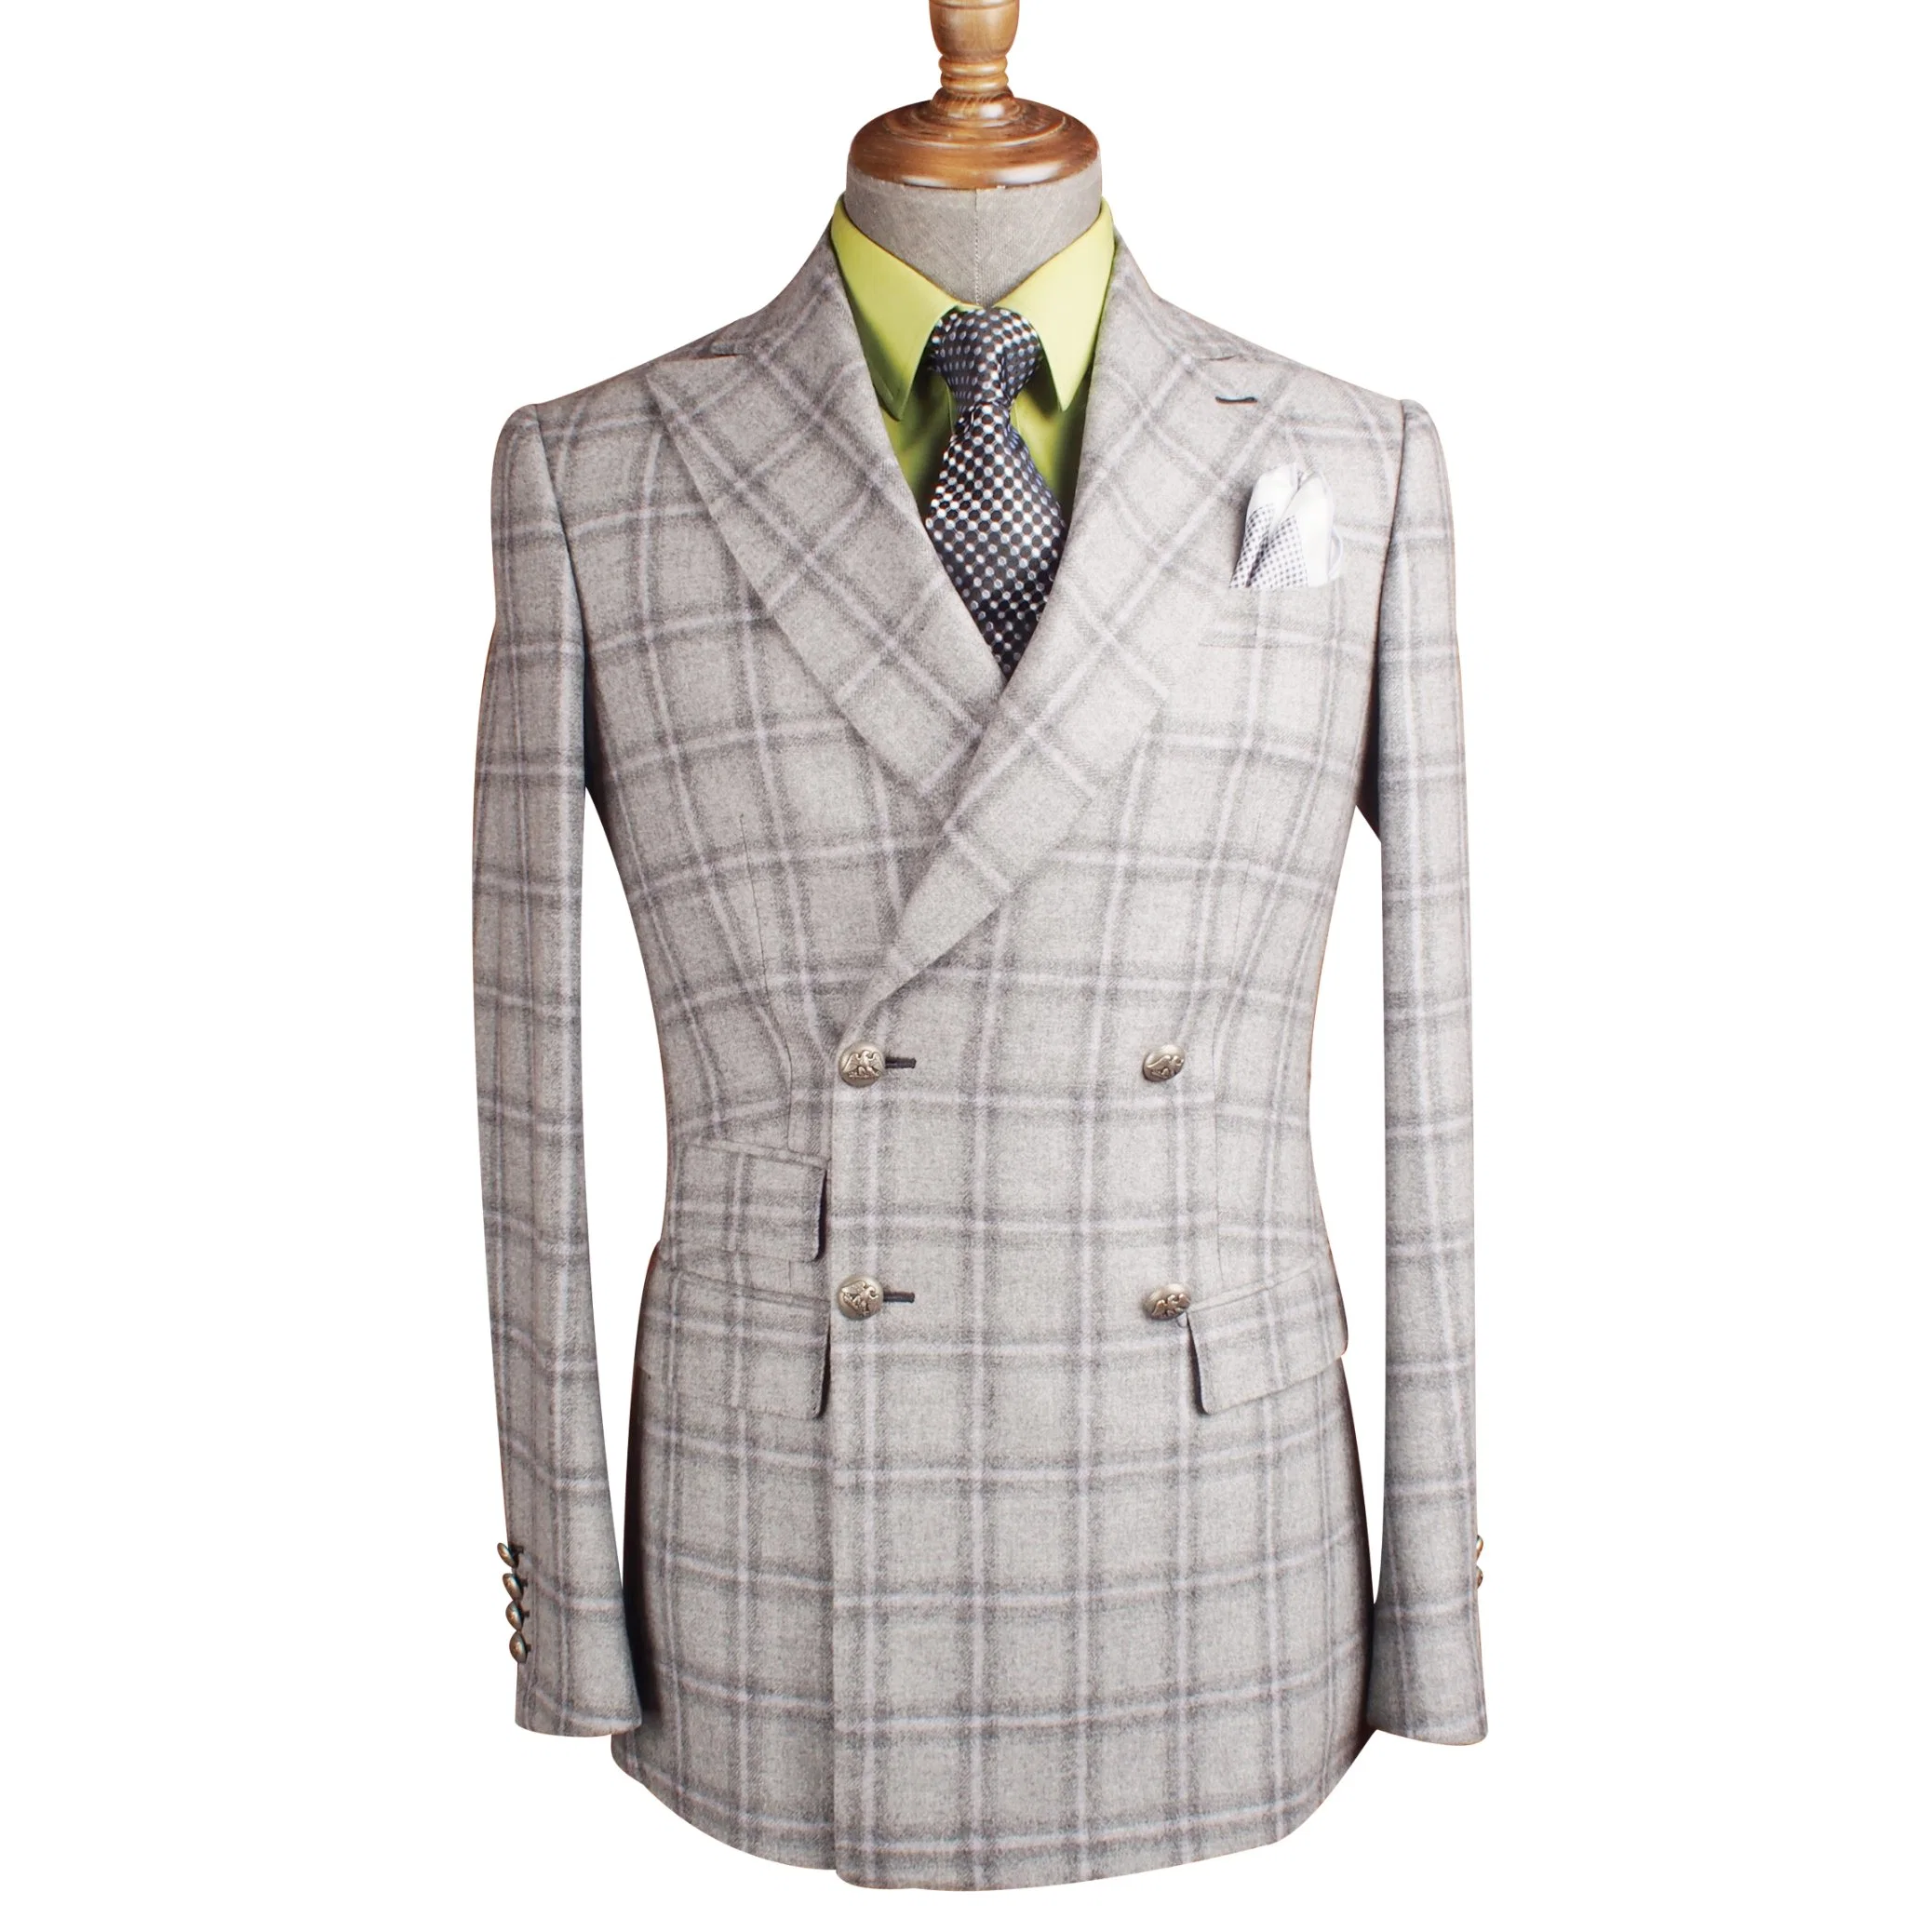 100% Wool Suit Top-Quality Plaid Slim Fit Suit